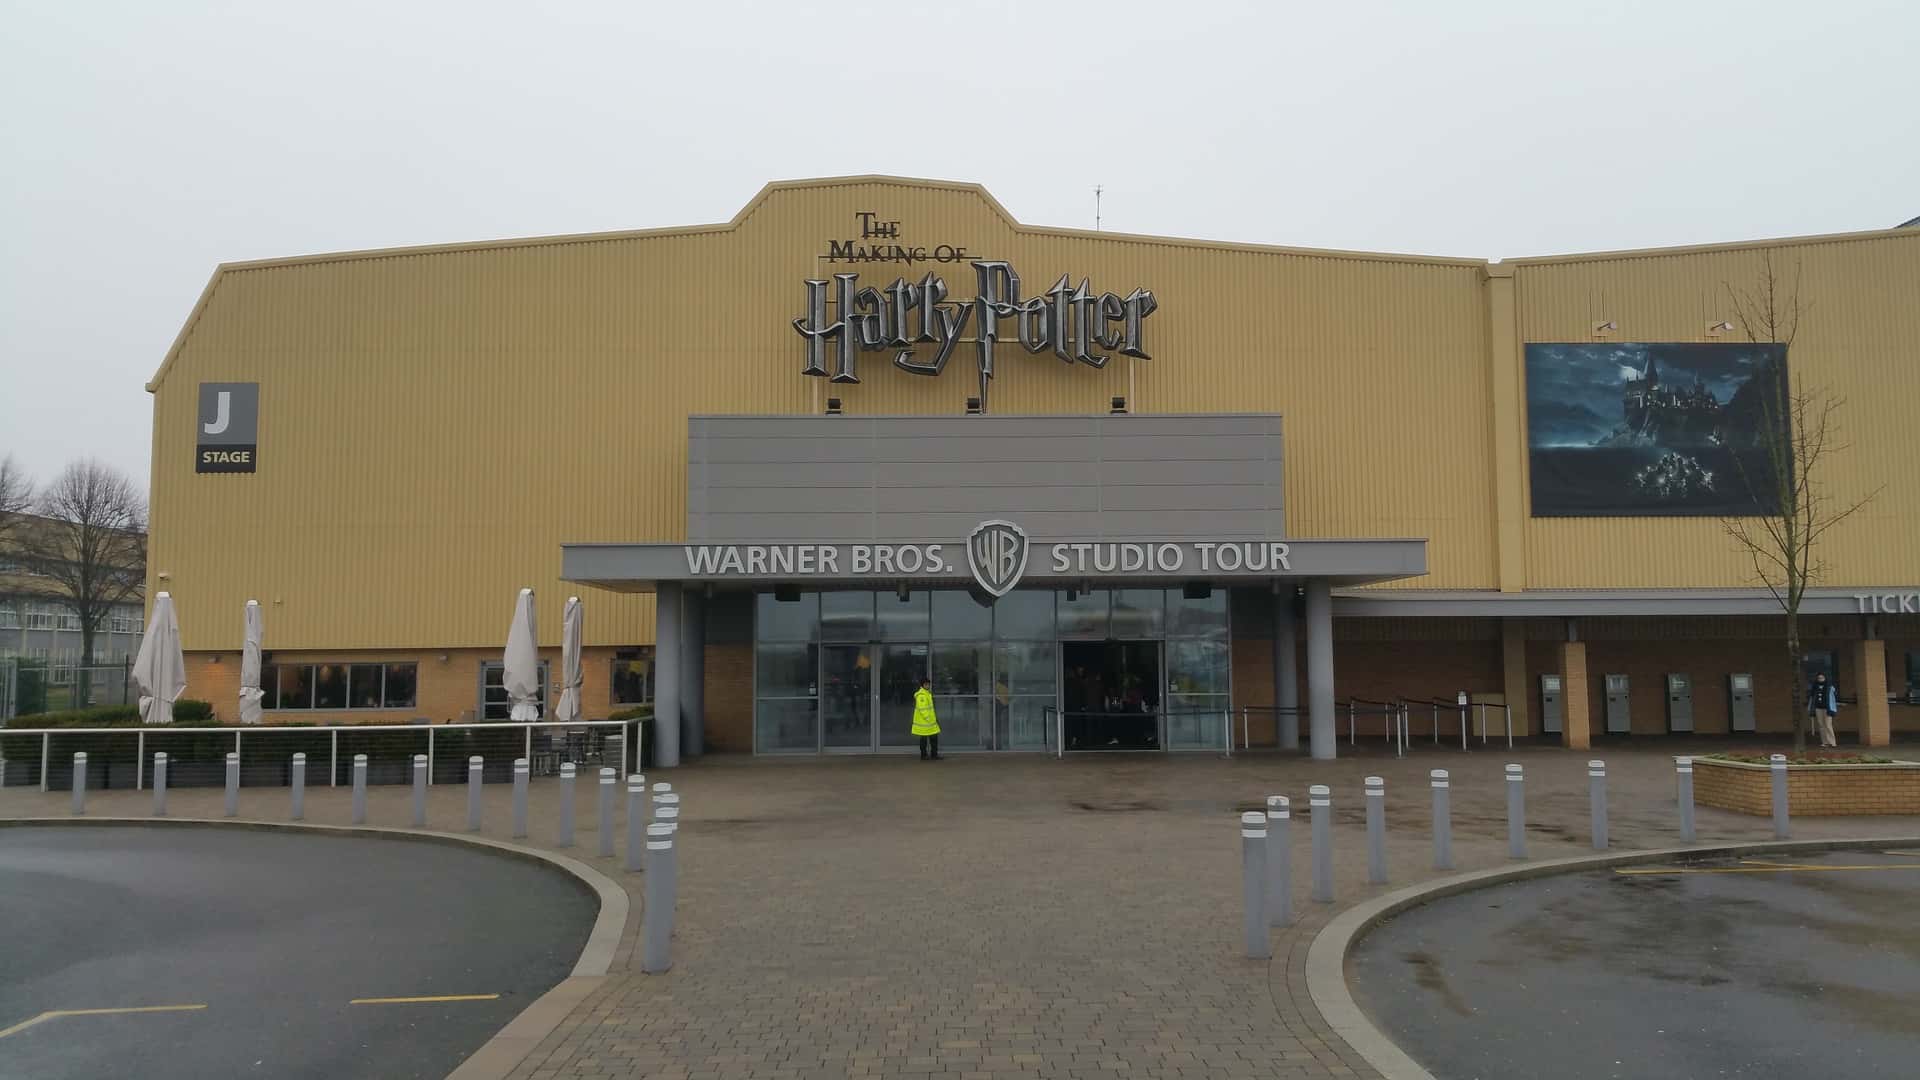 Jegy a Harry Potter Stúdióba – Találja meg a legolcsóbb árat